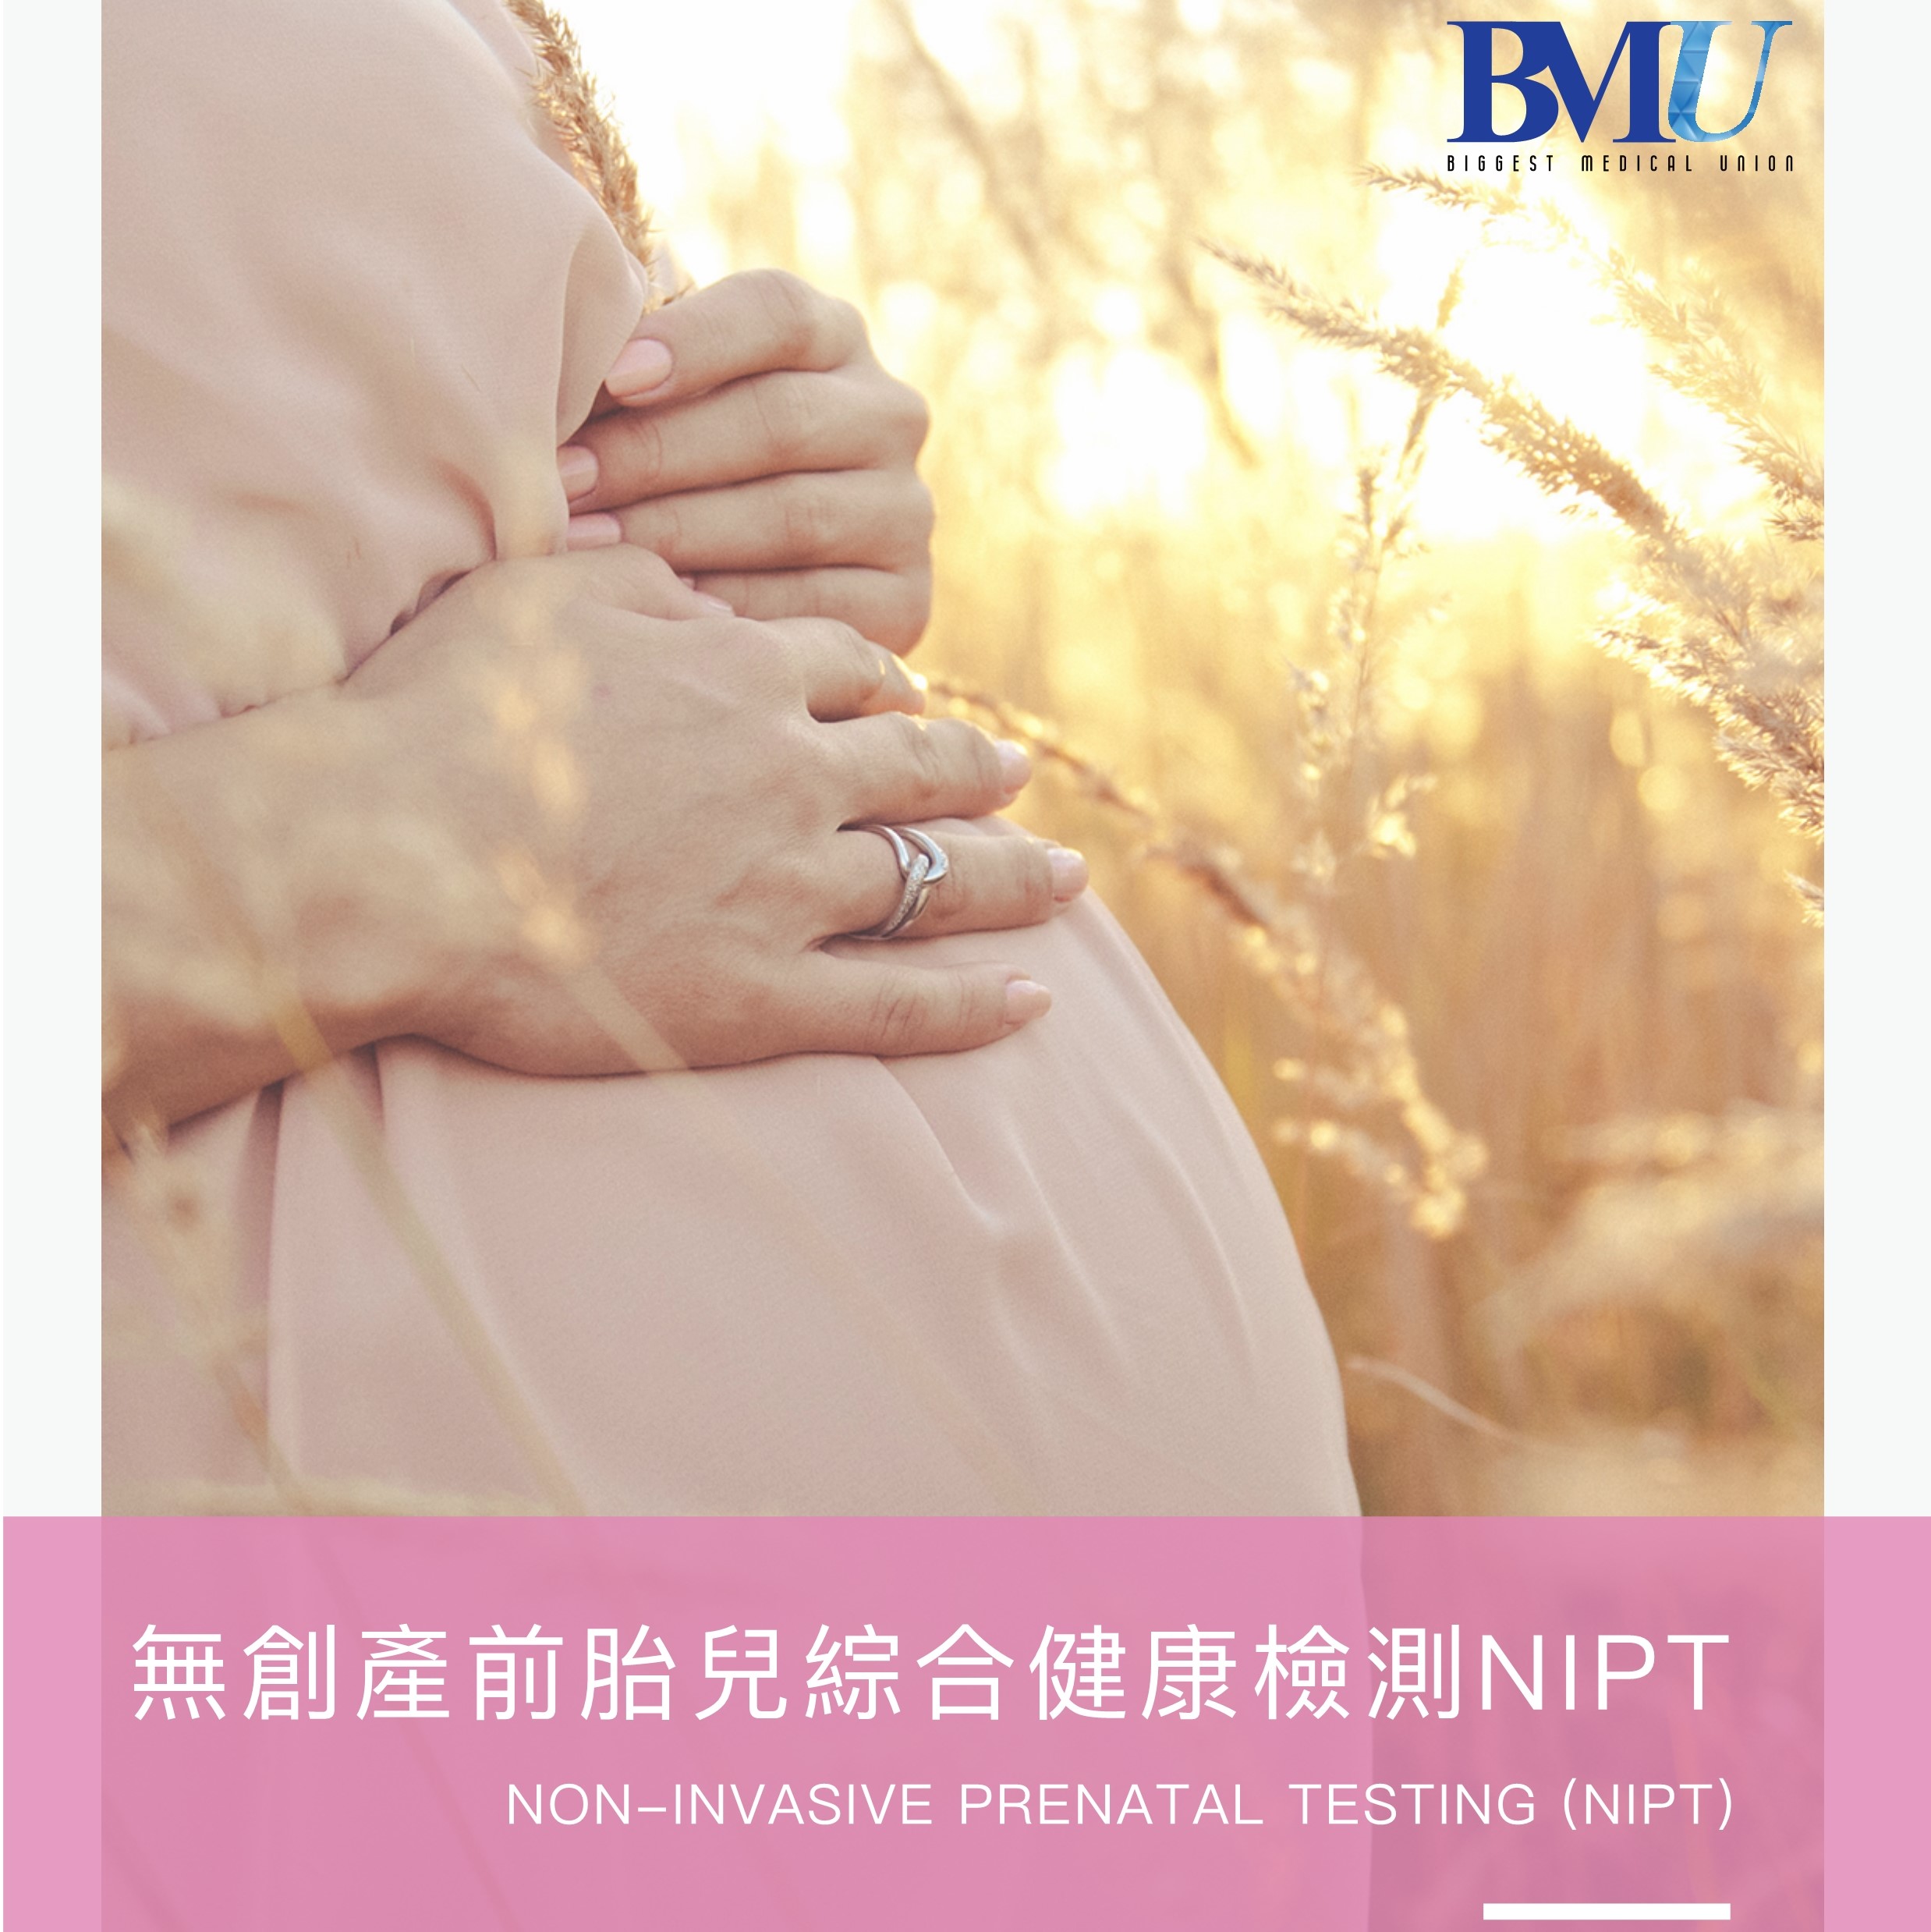 无创性胎儿DNA产前检测，为妈妈第一步把关胎儿的健康，让您拥有安心的怀孕旅程